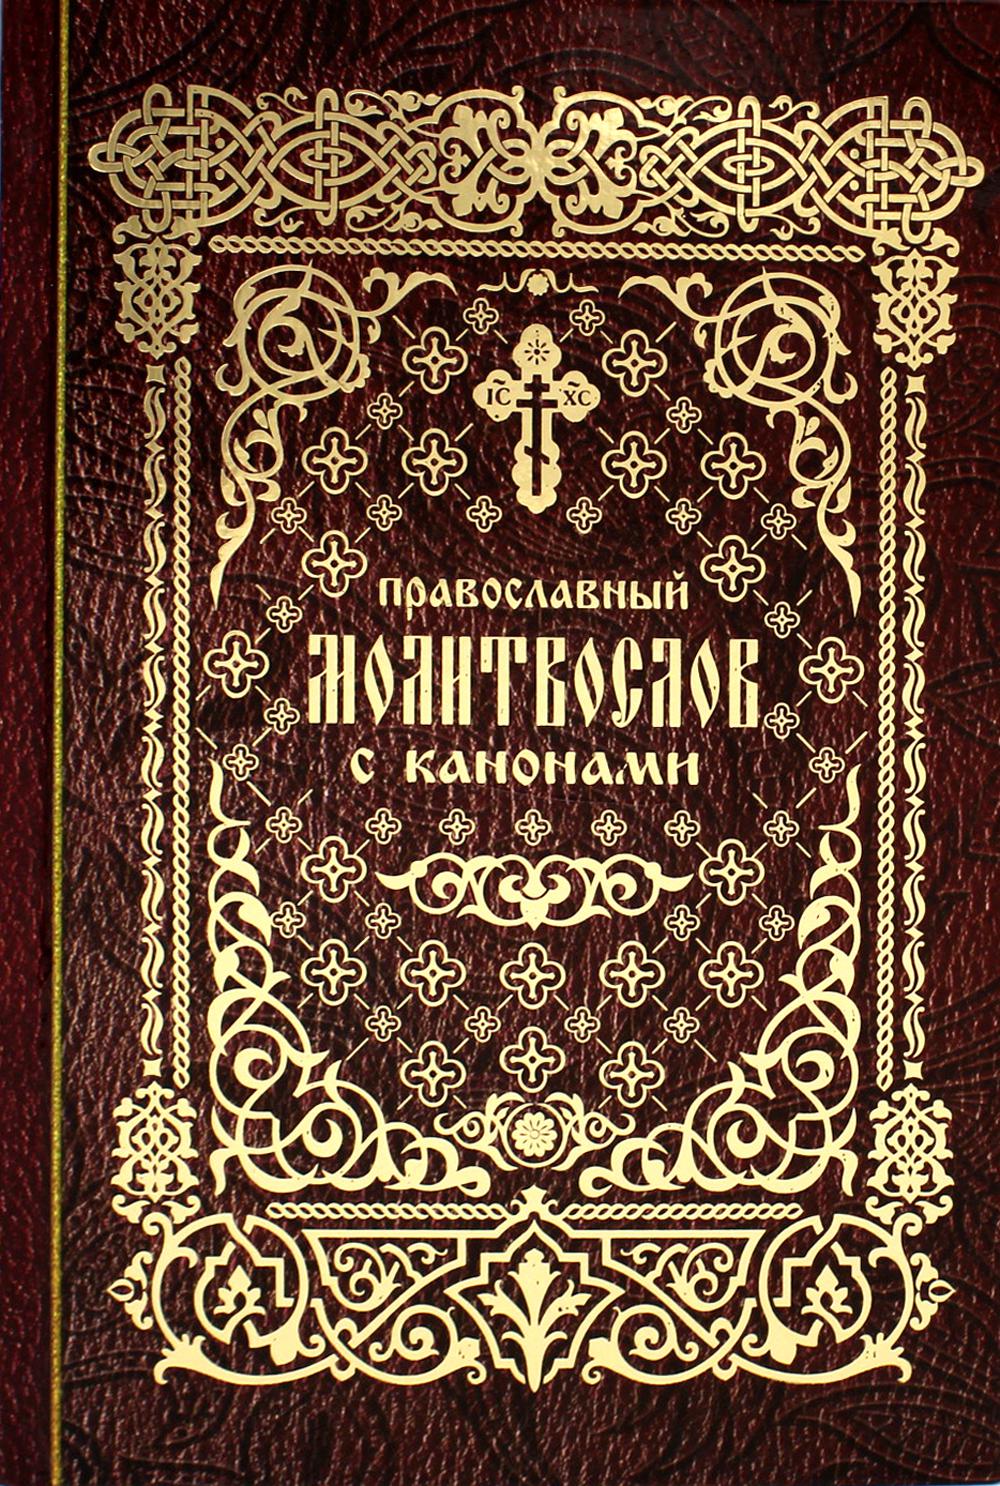 фото Книга православный молитвослов с канонами лепта